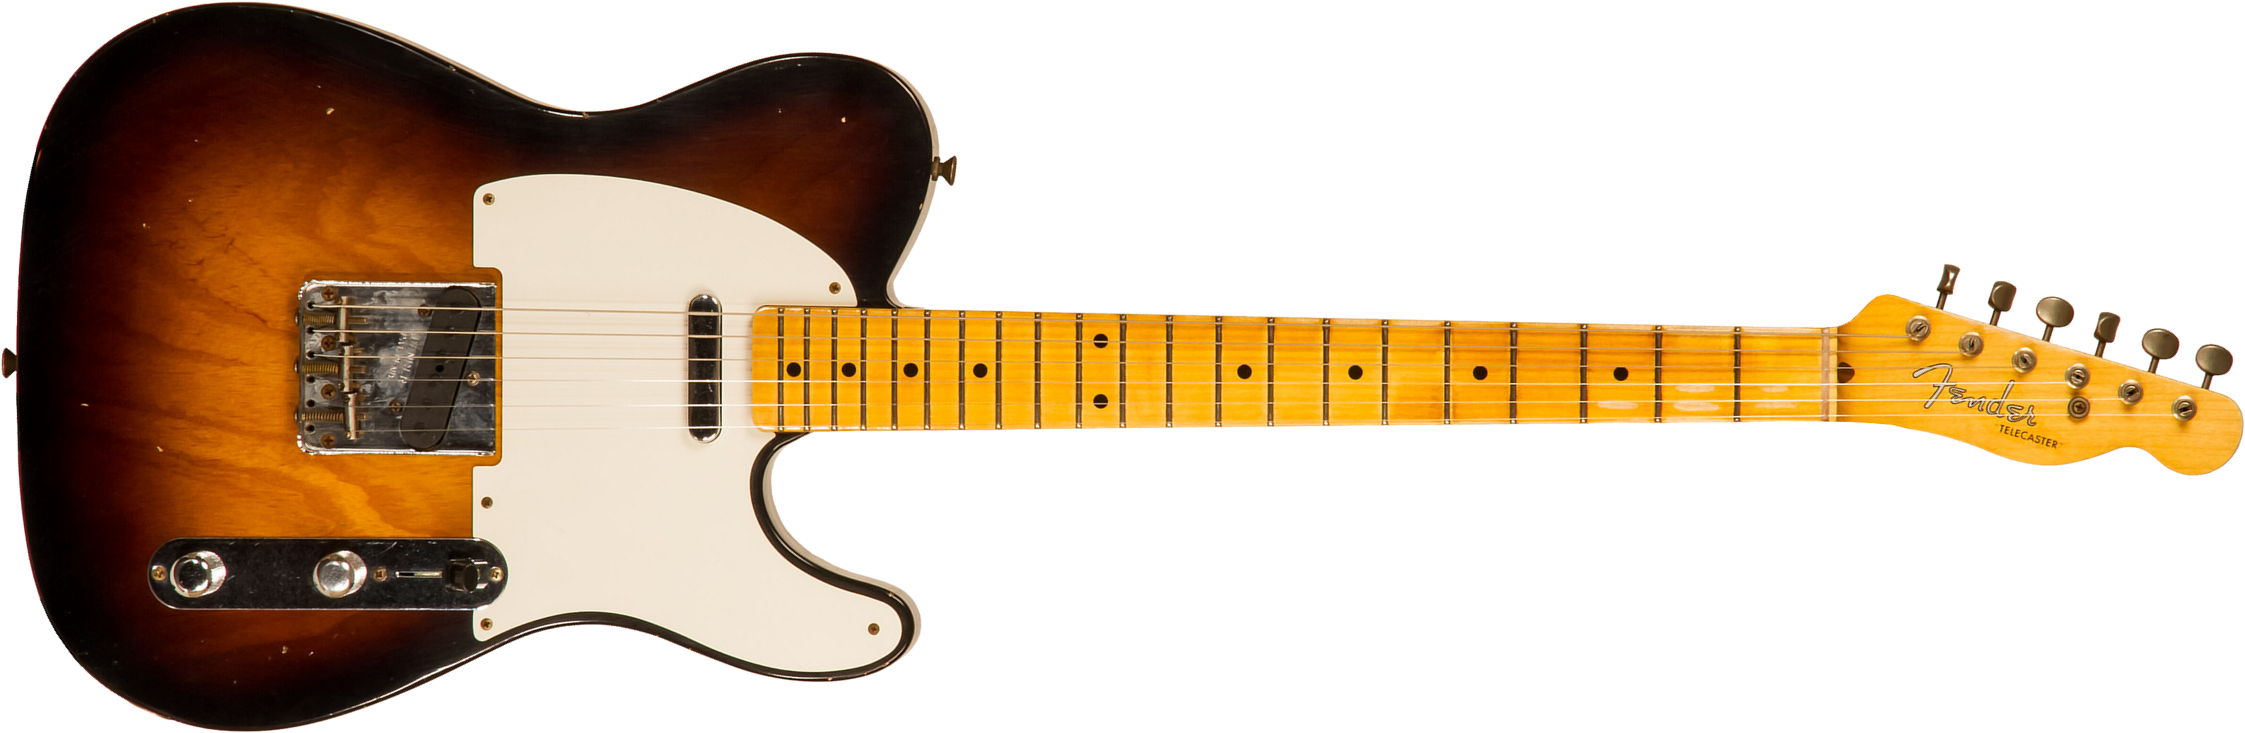 Fender Custom Shop Tele 1955 Ltd 2s Ht Mn #cz560649 - Relic Wide Fade 2-color Sunburst - Guitare Électrique Forme Tel - Main picture